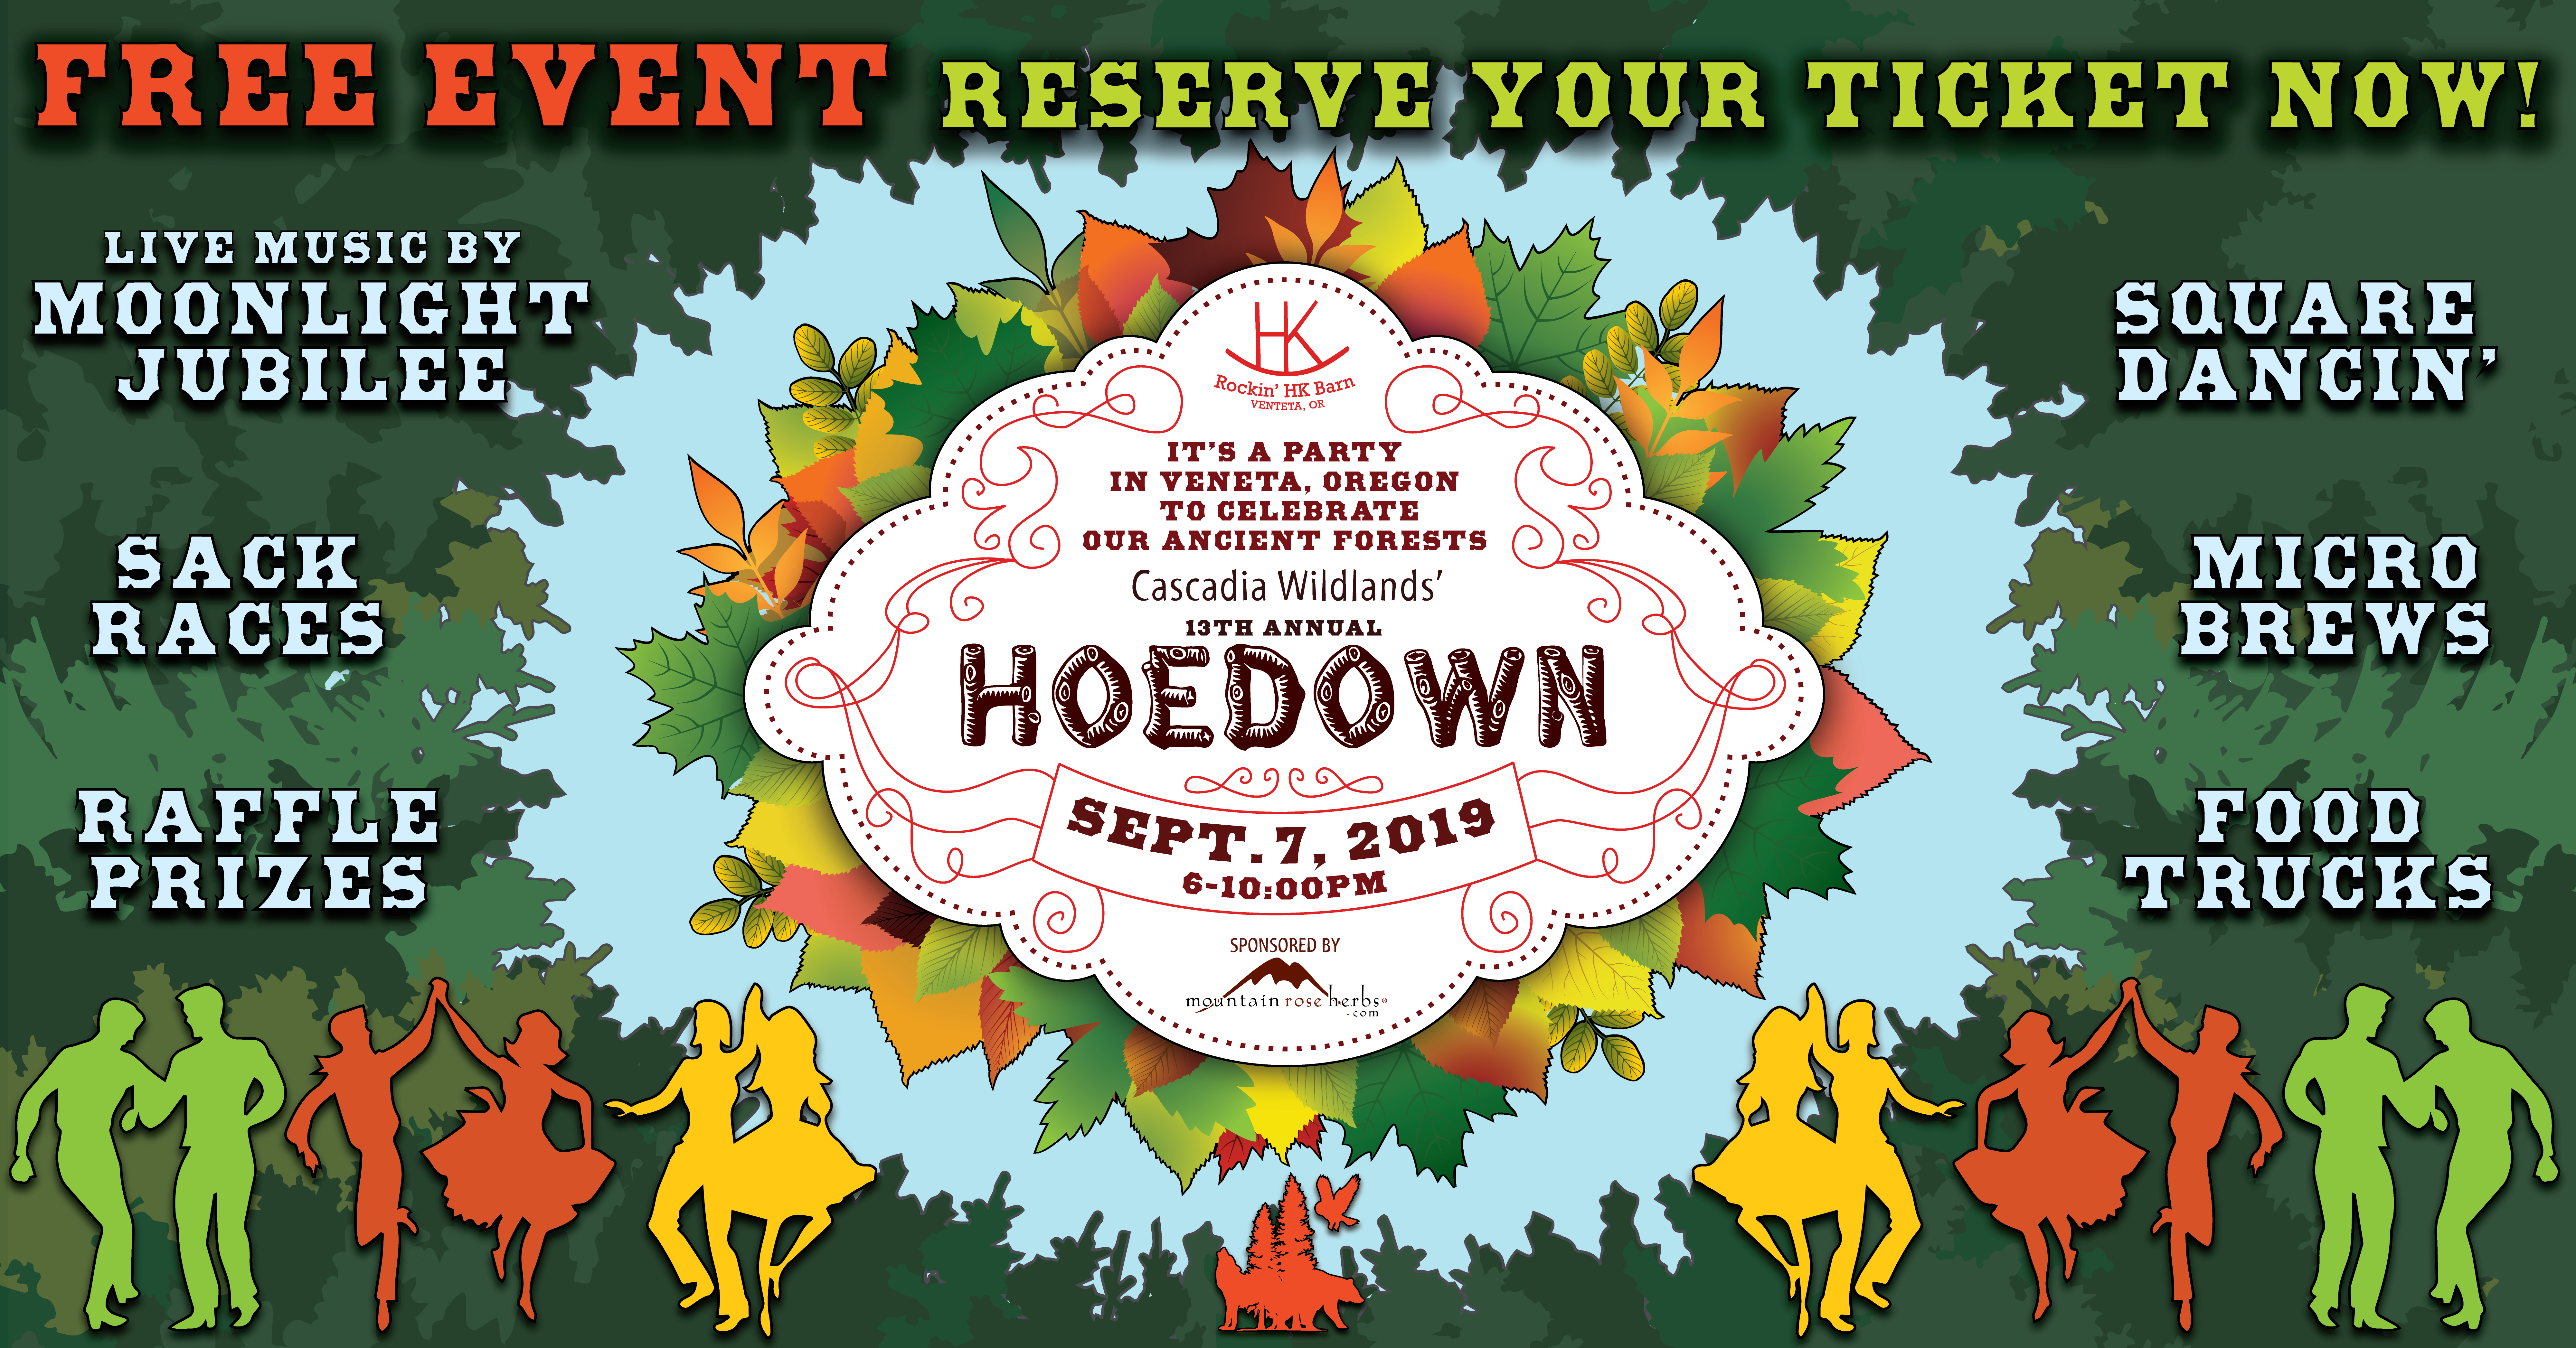 13th Annual Hoedown — Sept. 7, 2019